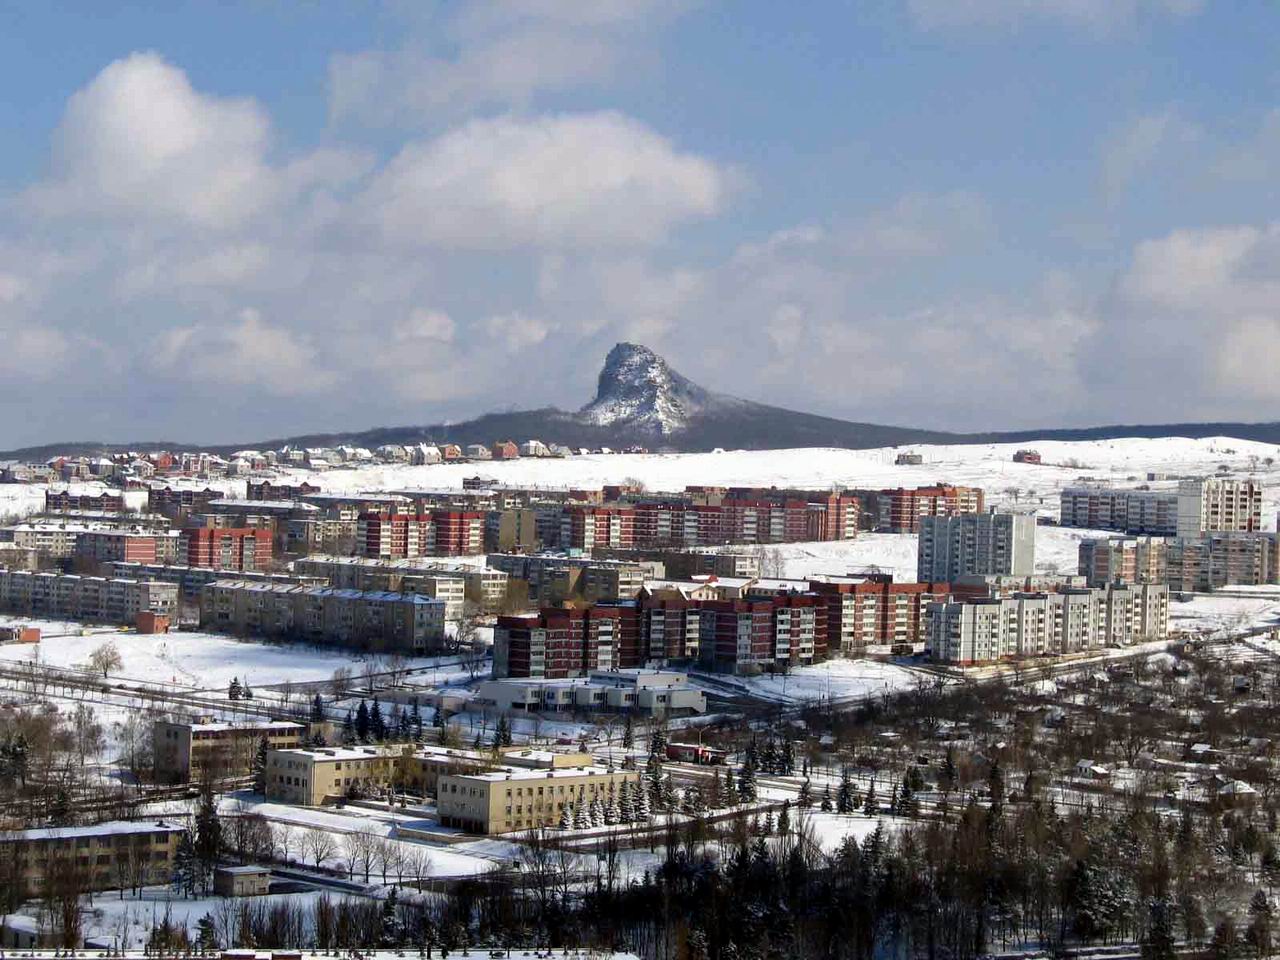 Нажмите для просмотра фото в полный размер
 ============== 
Вид на город с горы Шелудивая (2004 год)
Анна Афанасьева
